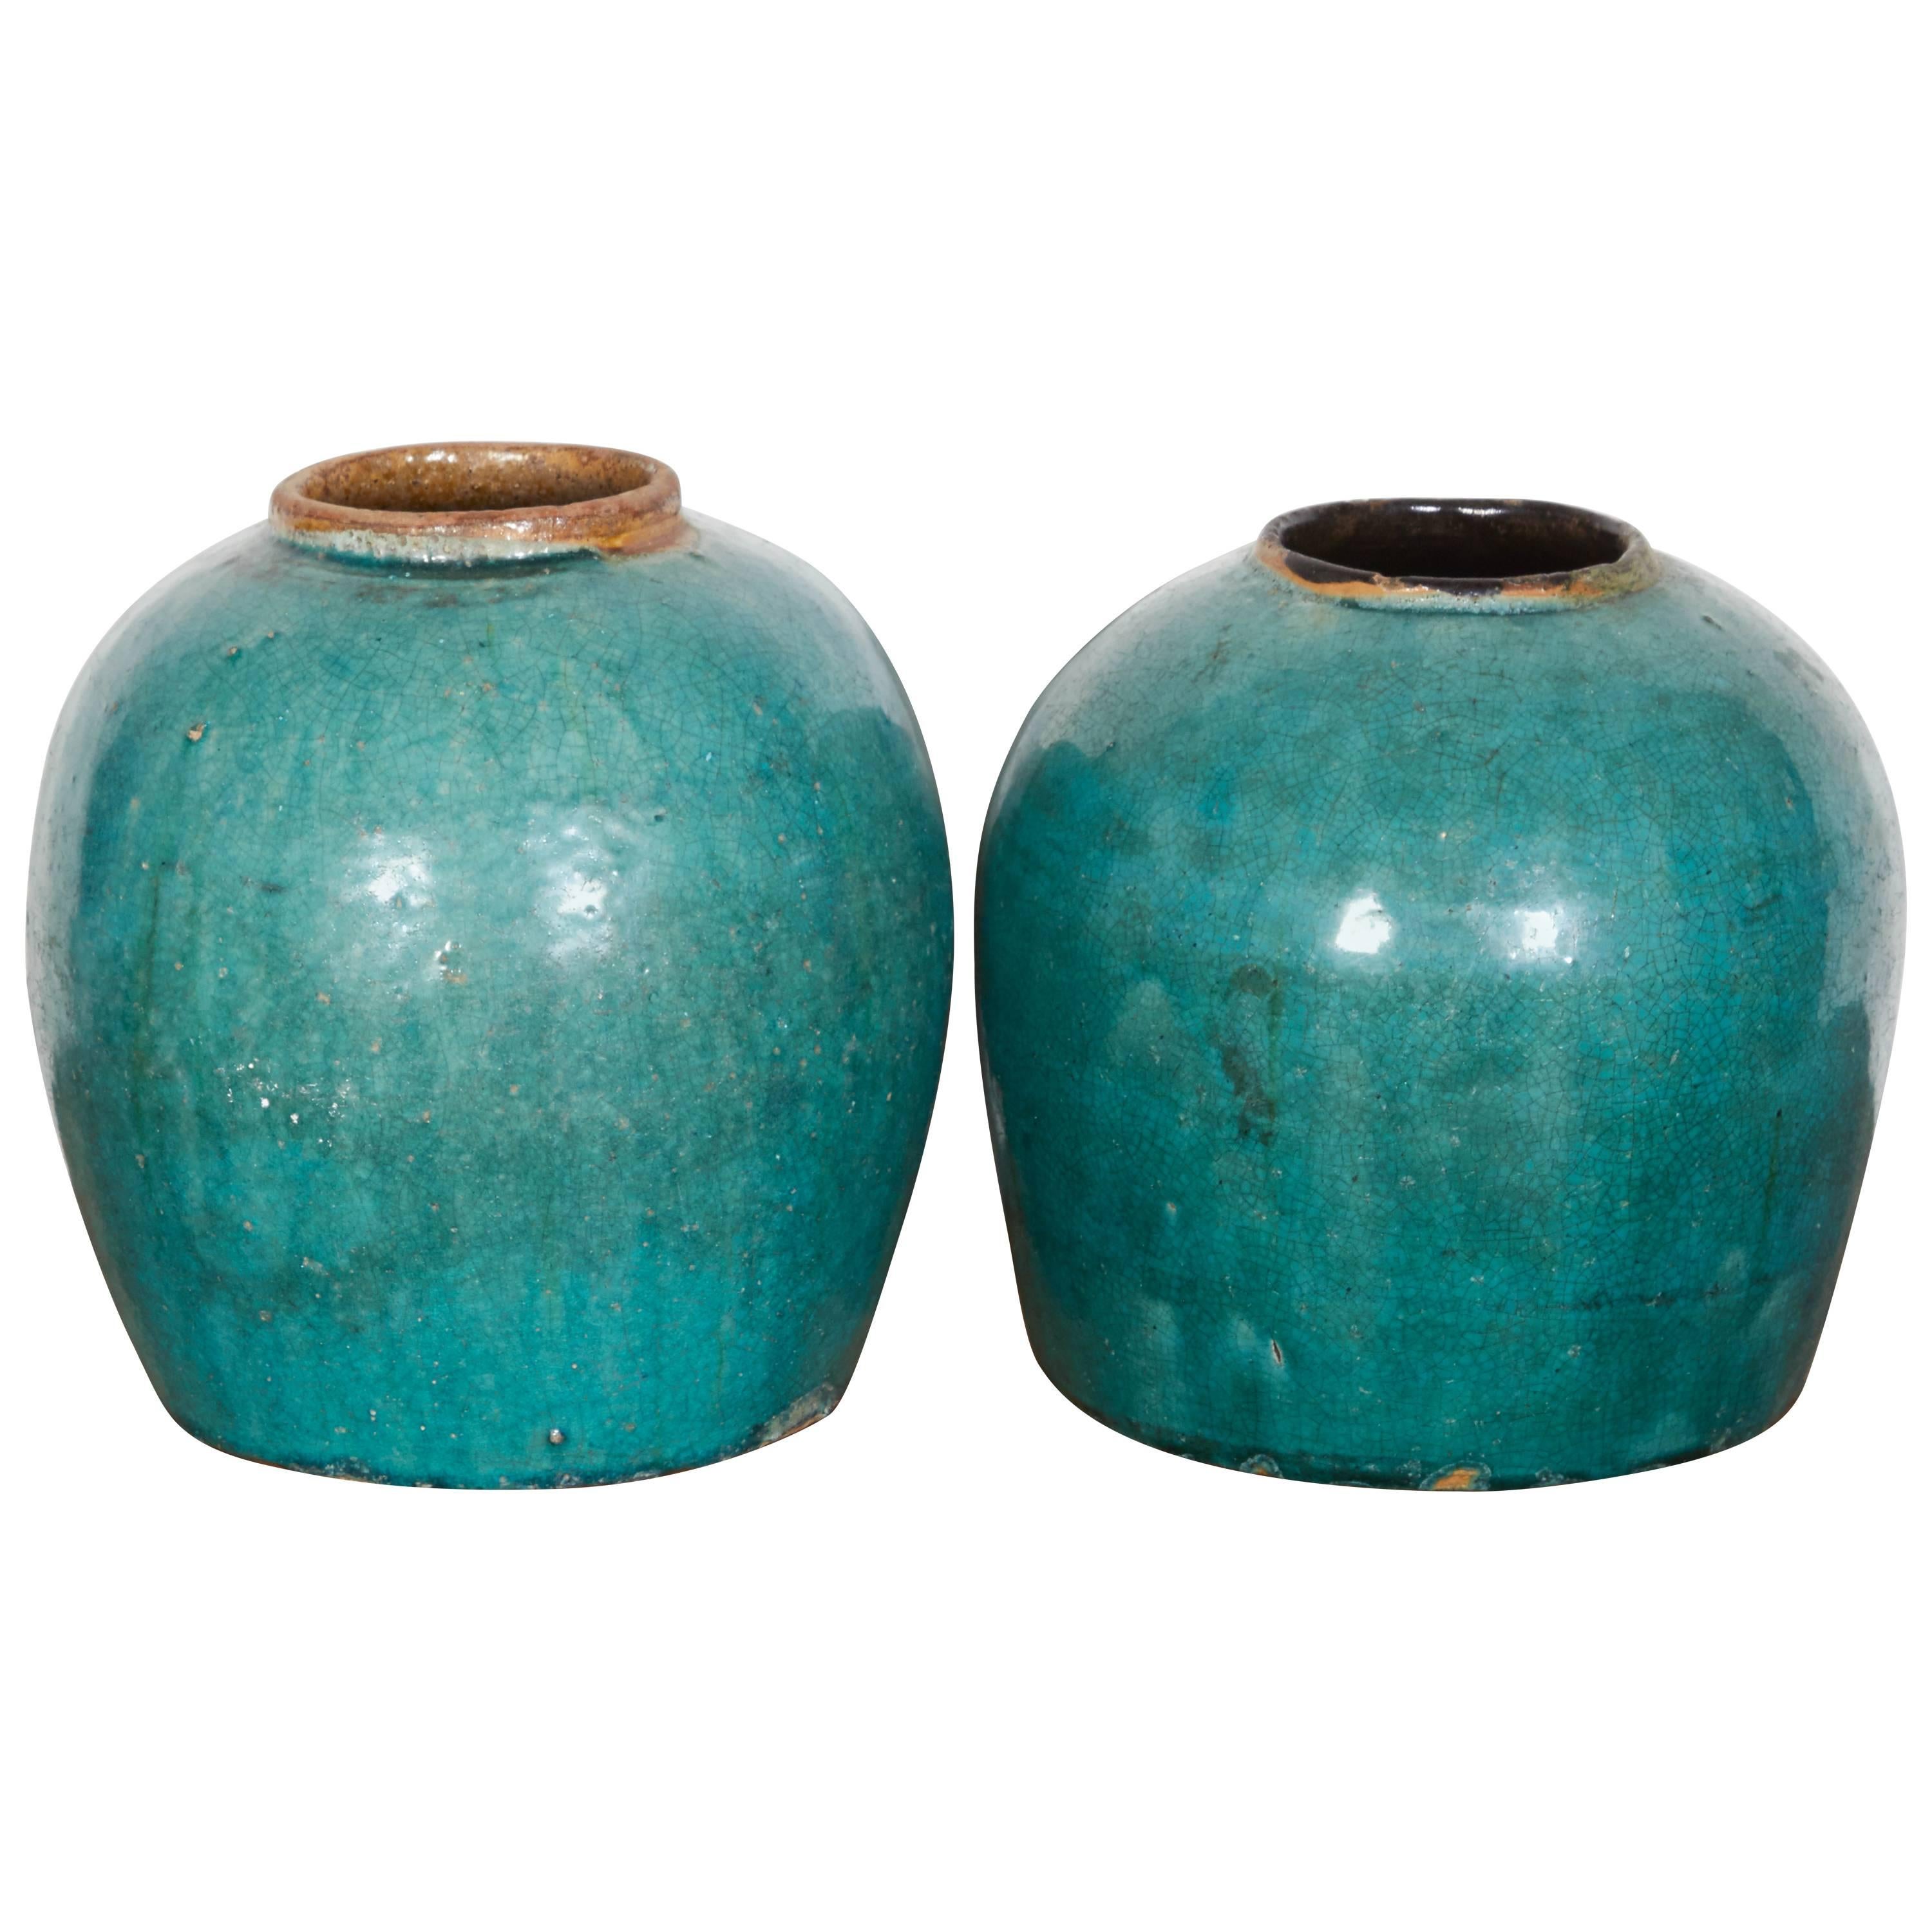 Antique Chinese Ceramic Ginger Jars